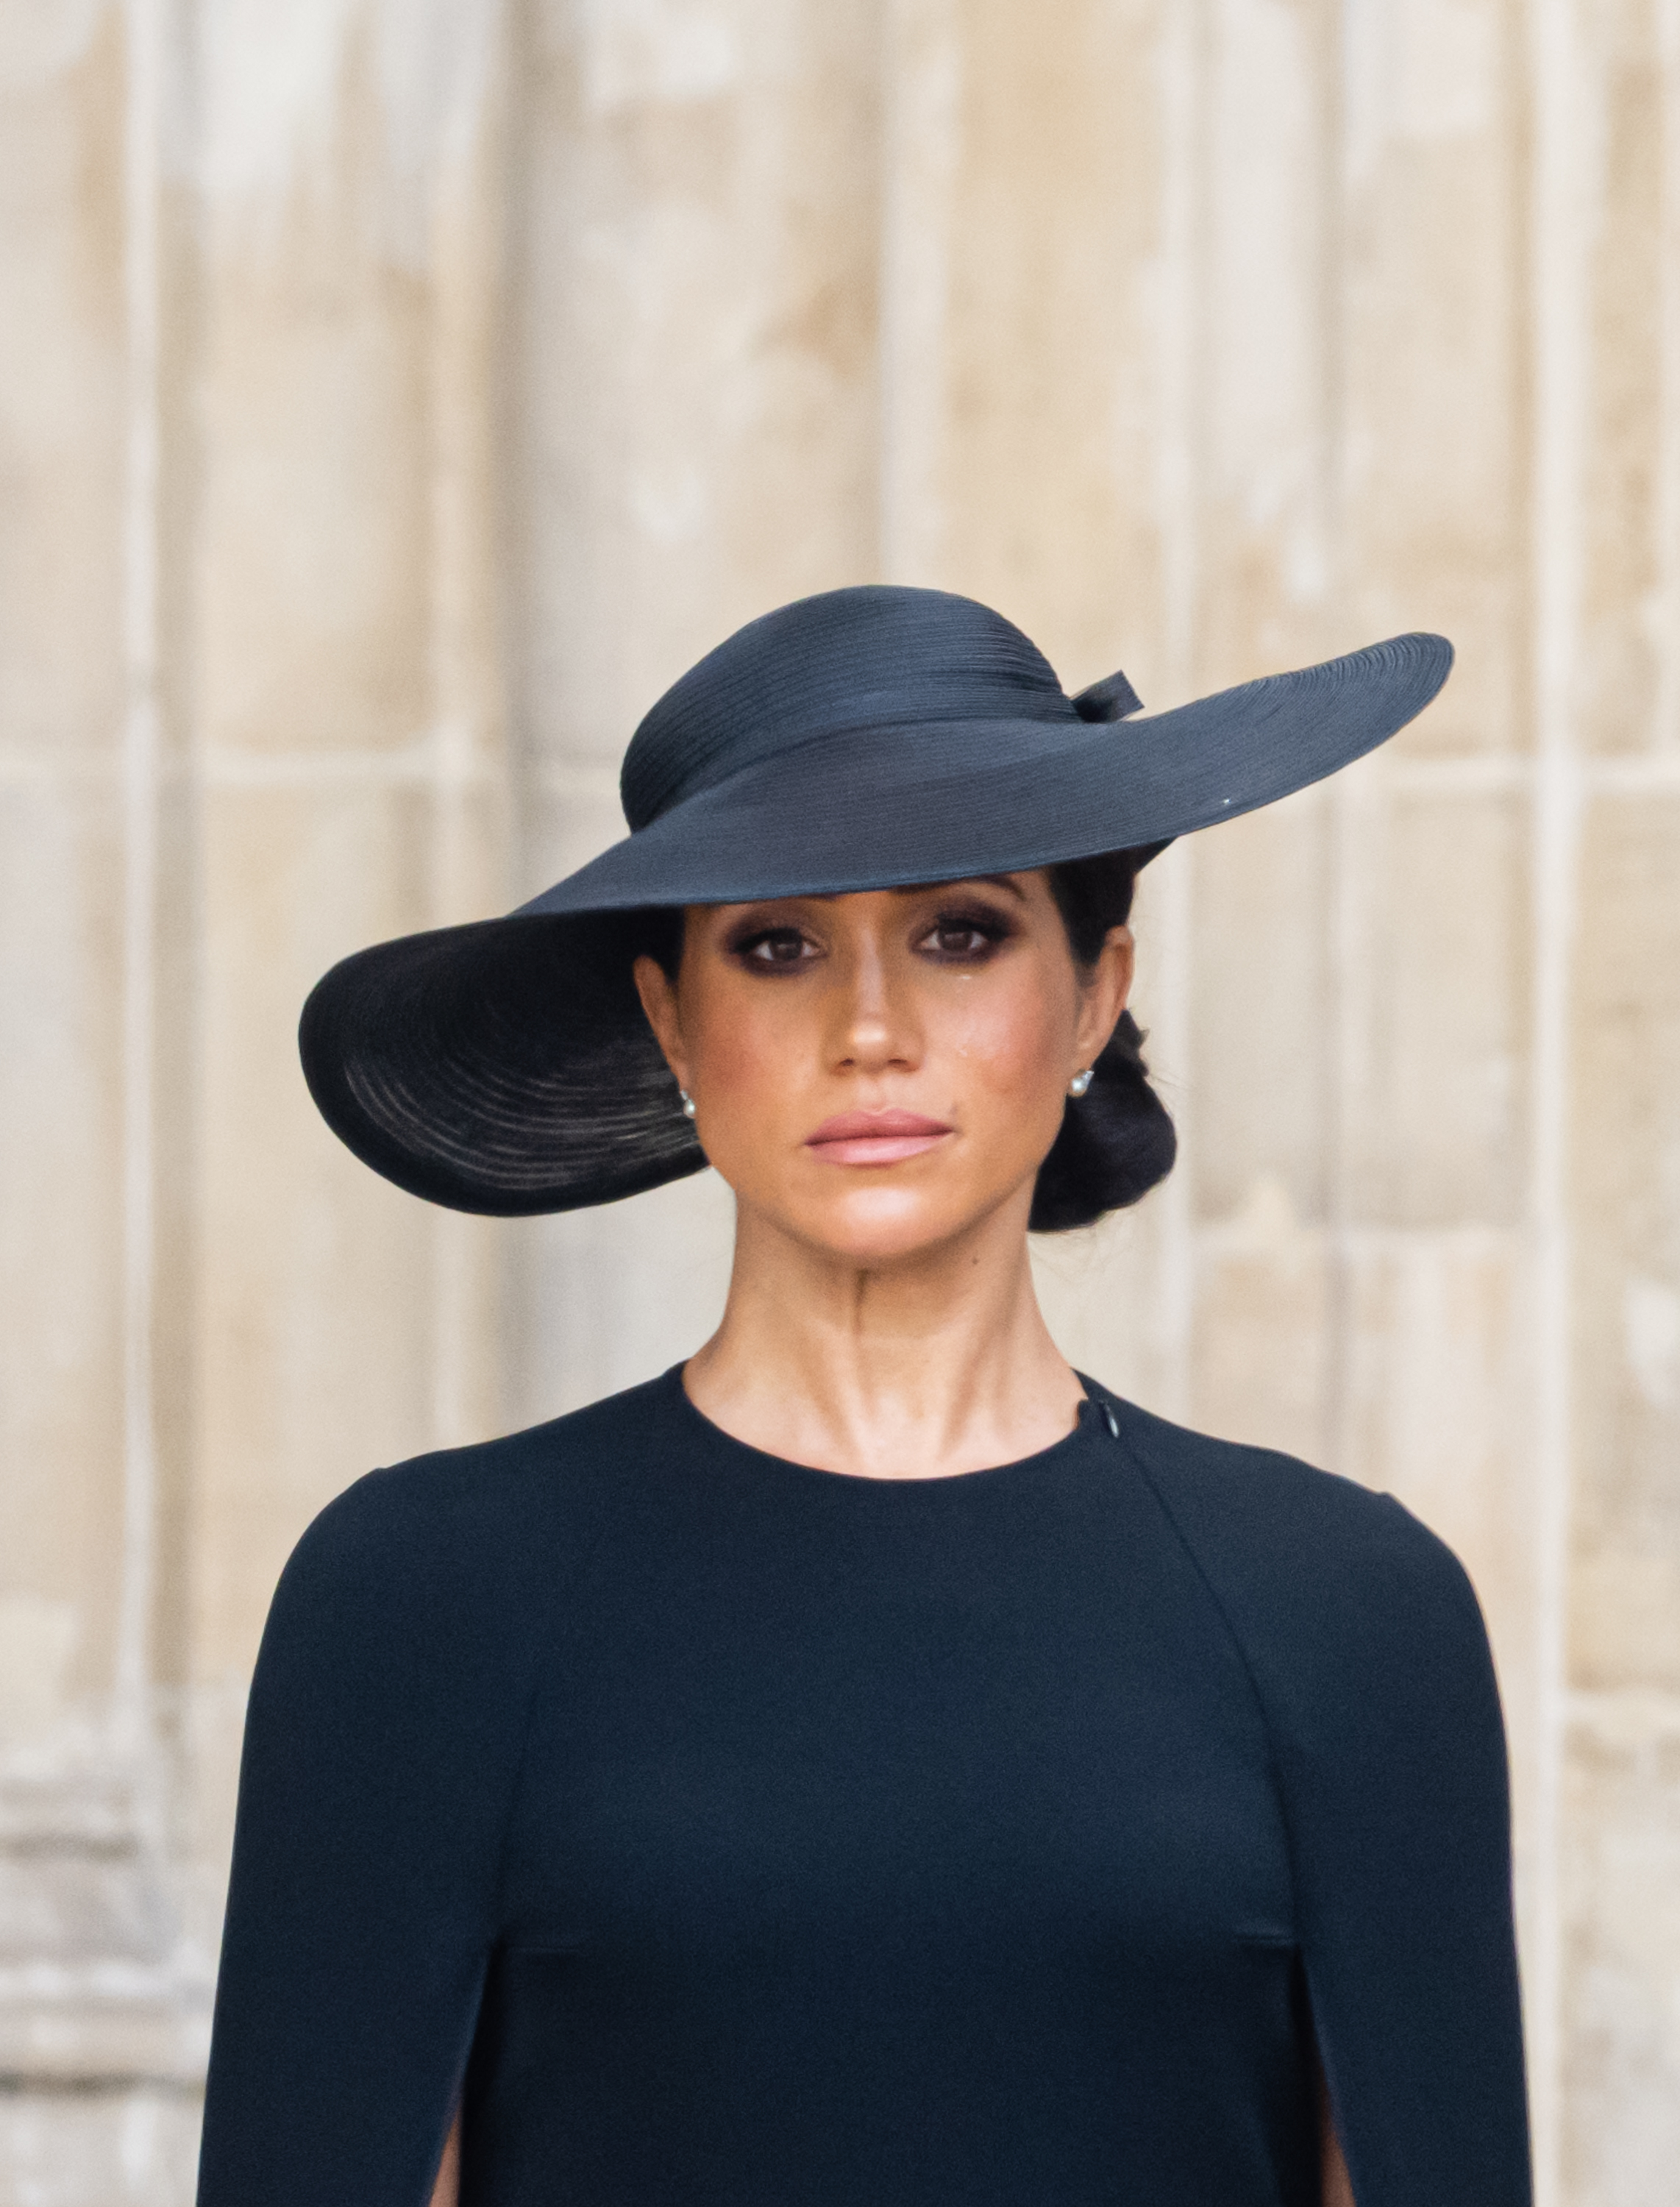 Meghan Markle aux funérailles nationales de la reine Élisabeth II à l'abbaye de Westminster le 19 septembre 2022 à Londres, Angleterre | Source : Getty Images